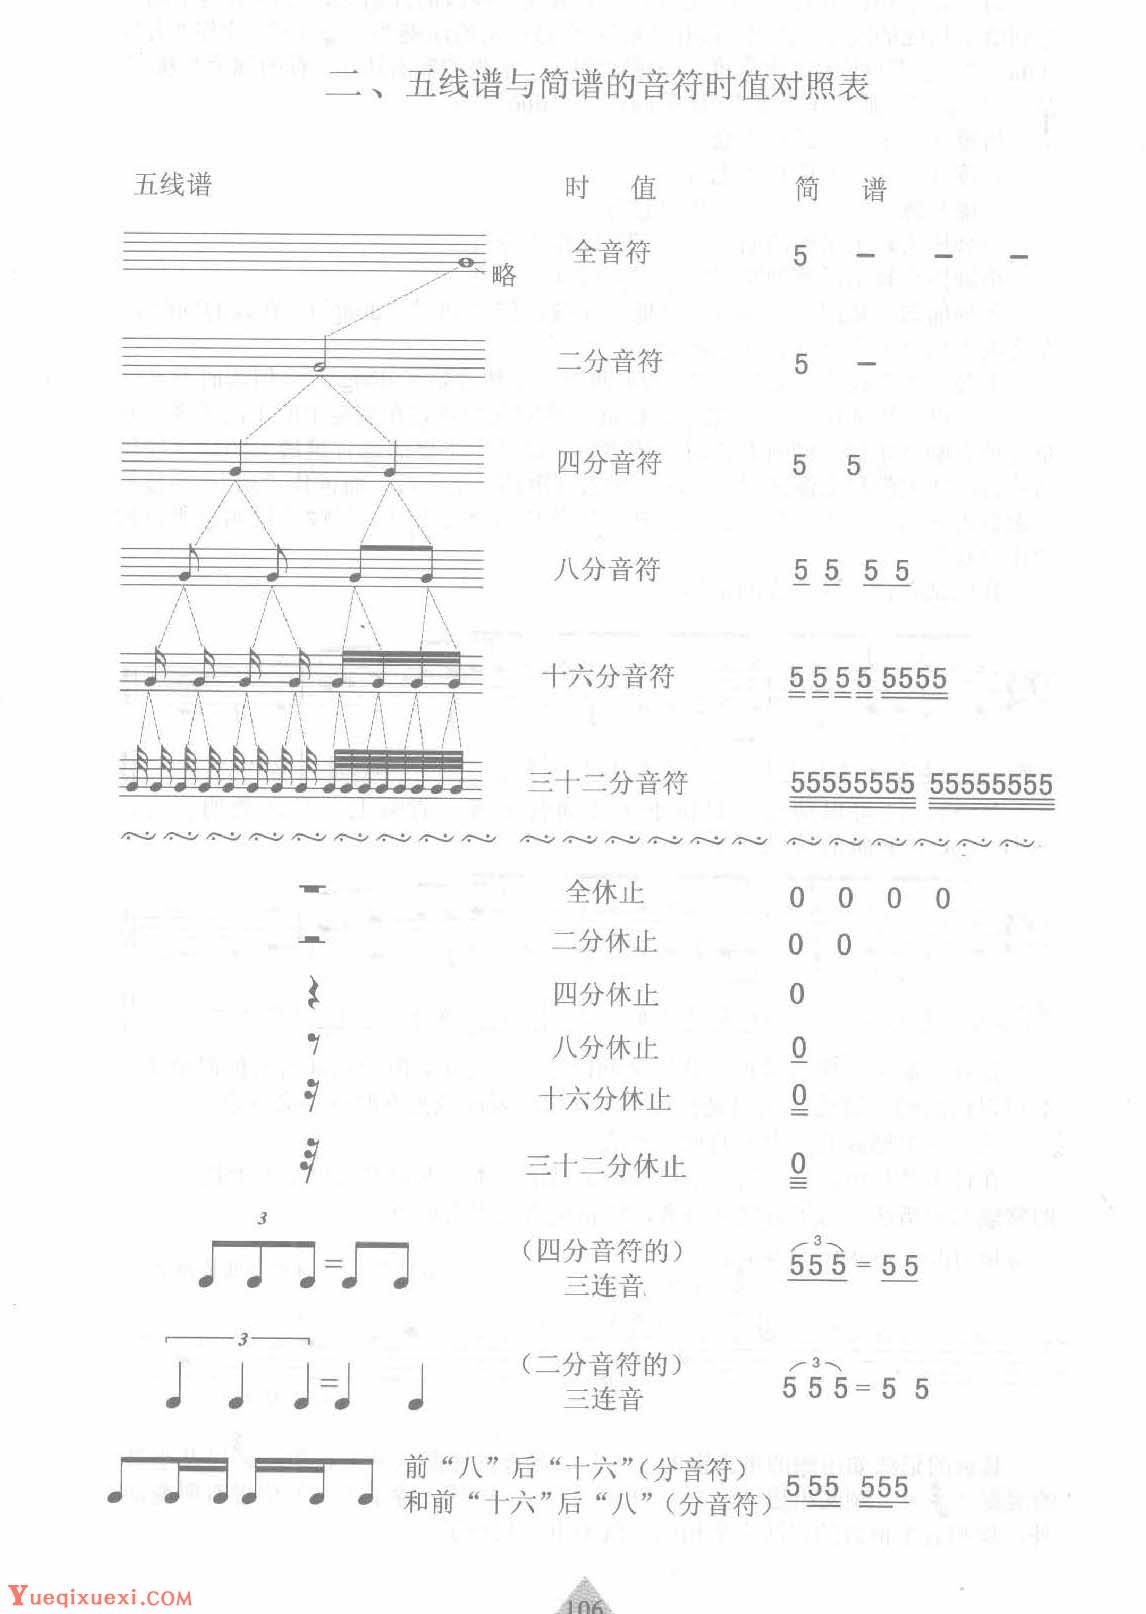 爵士鼓五线谱与简谱的音符时值对照表